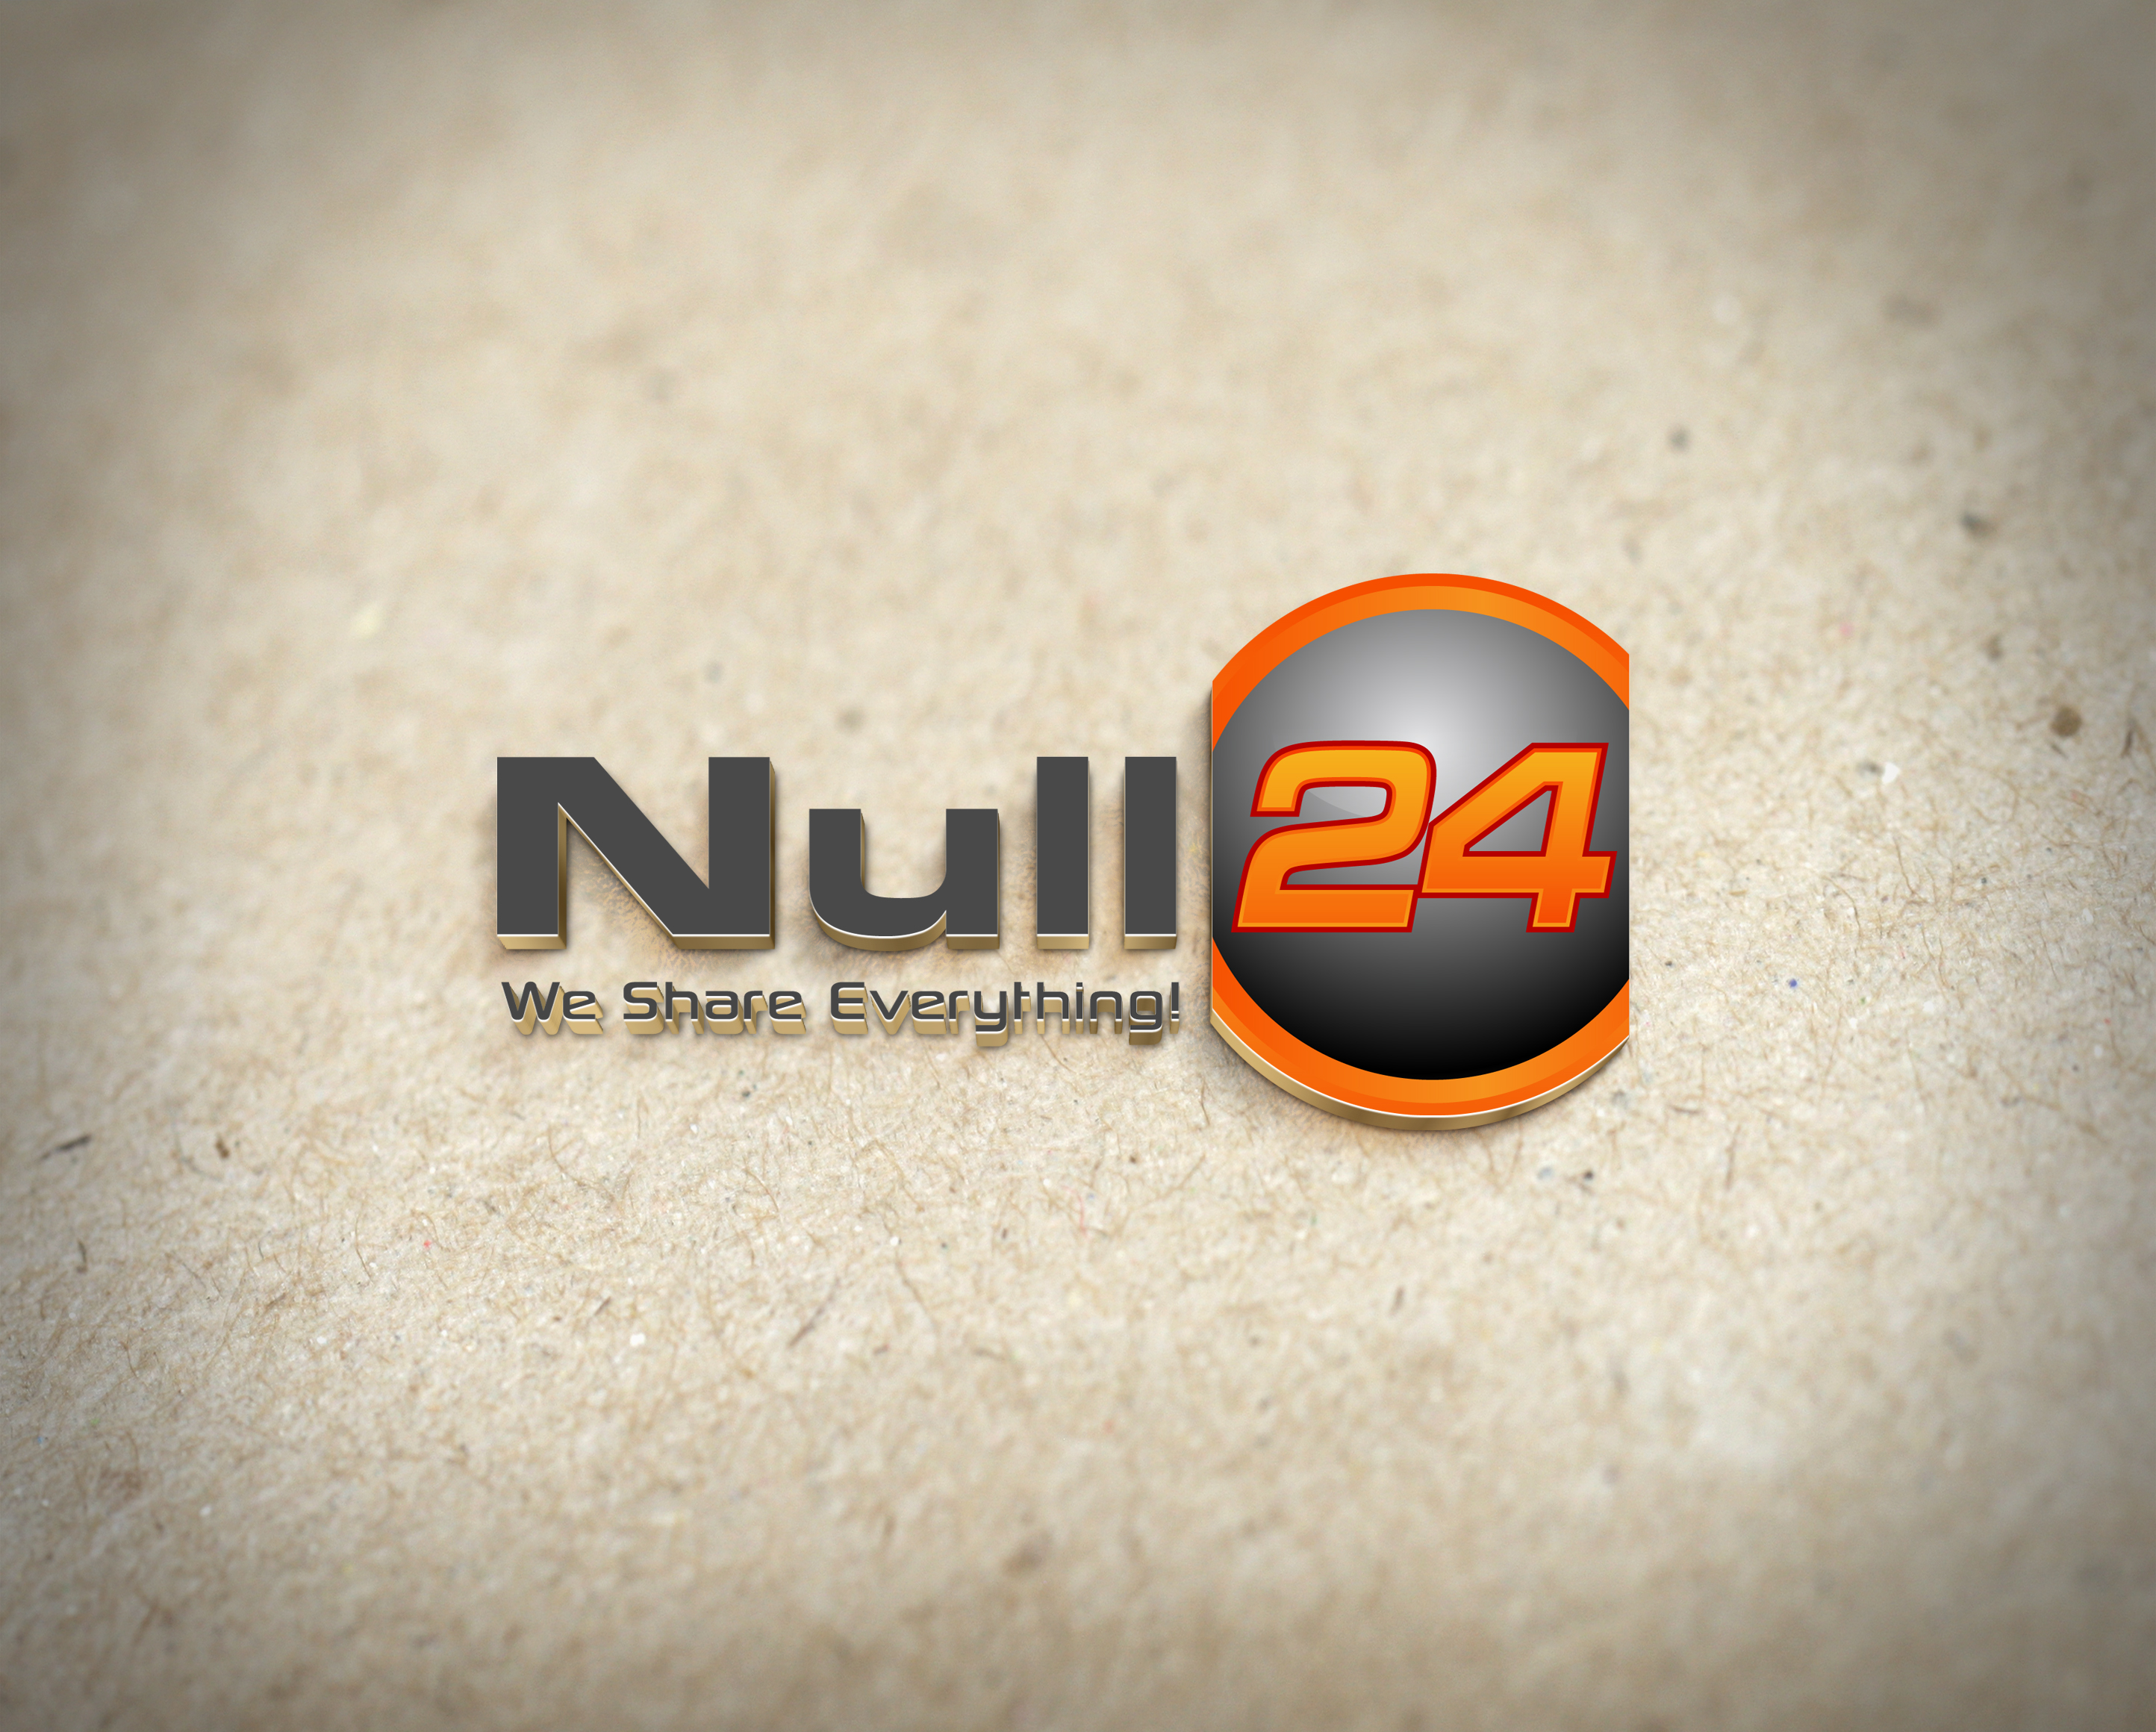 Null24